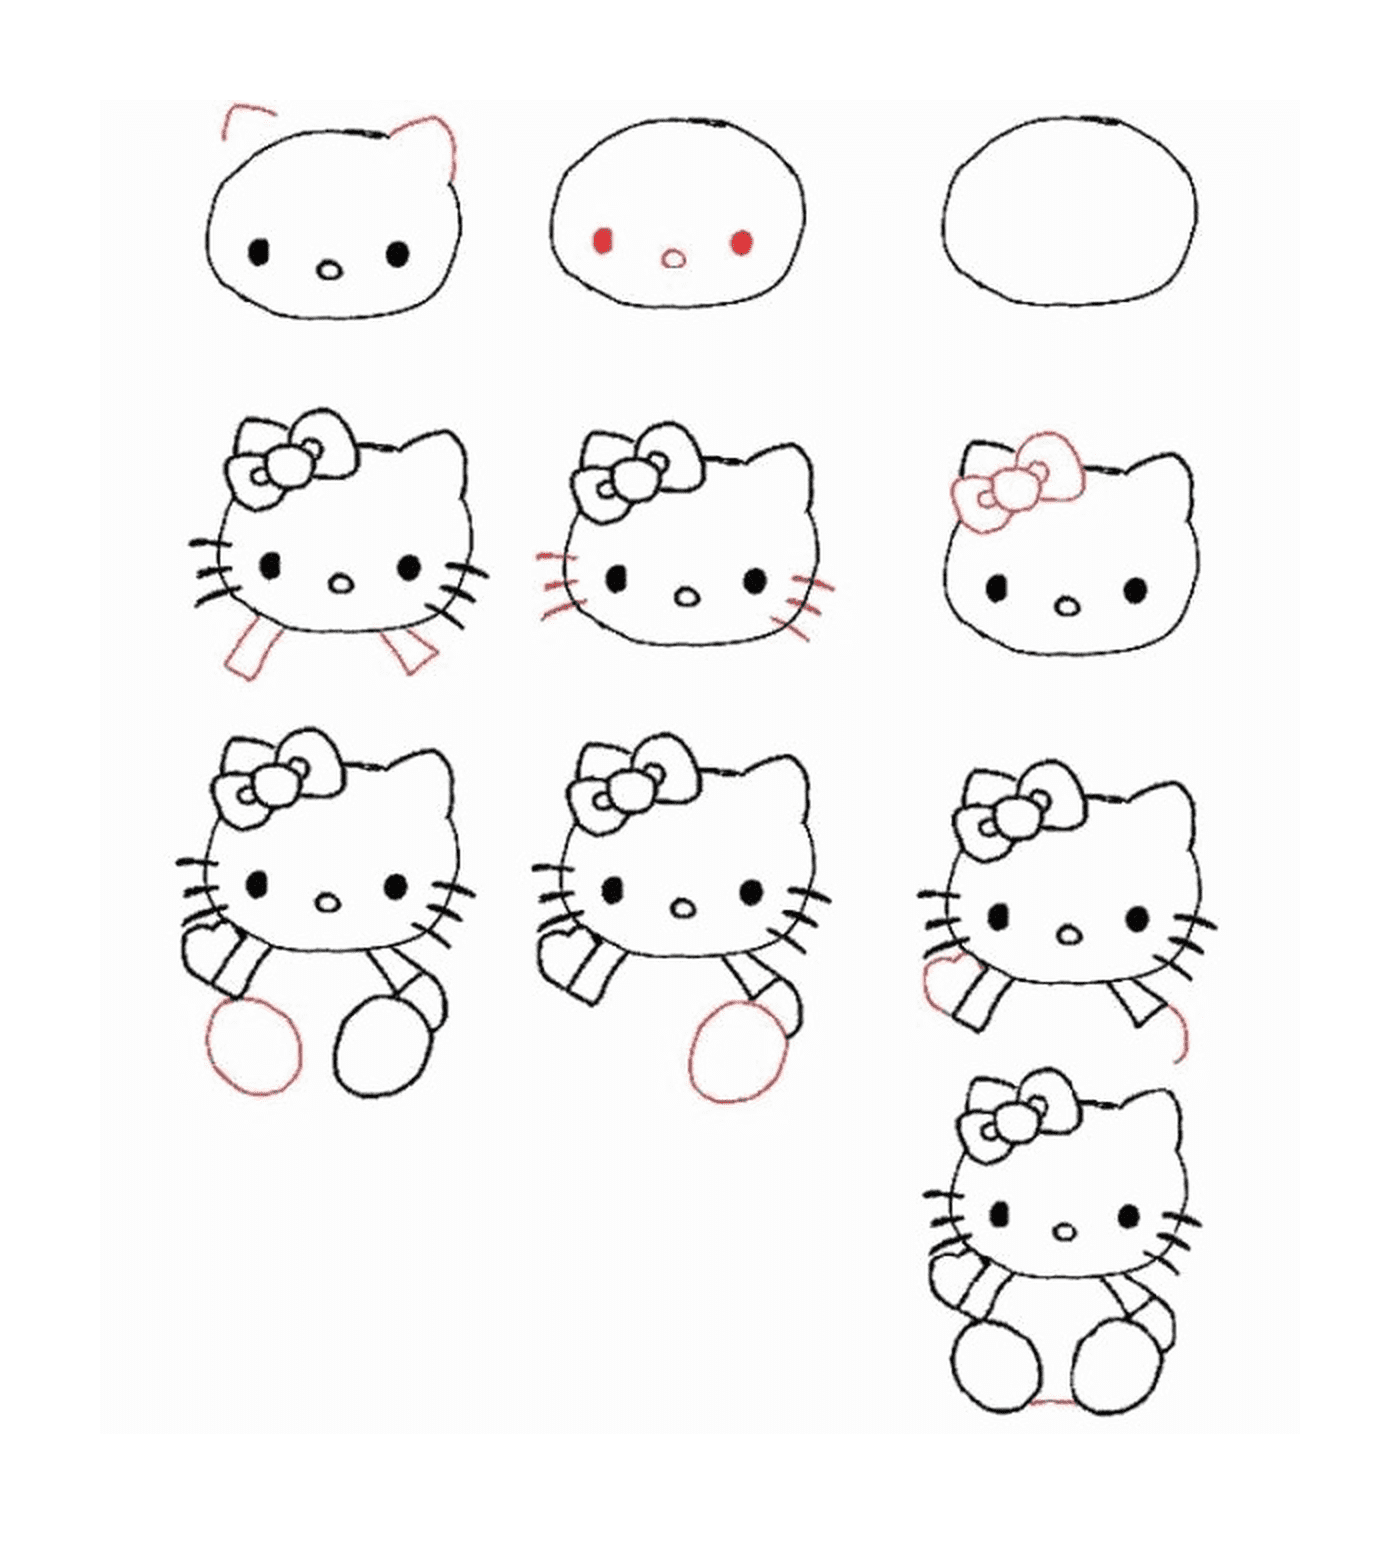  Instruções passo a passo sobre como desenhar Hello Kitty 